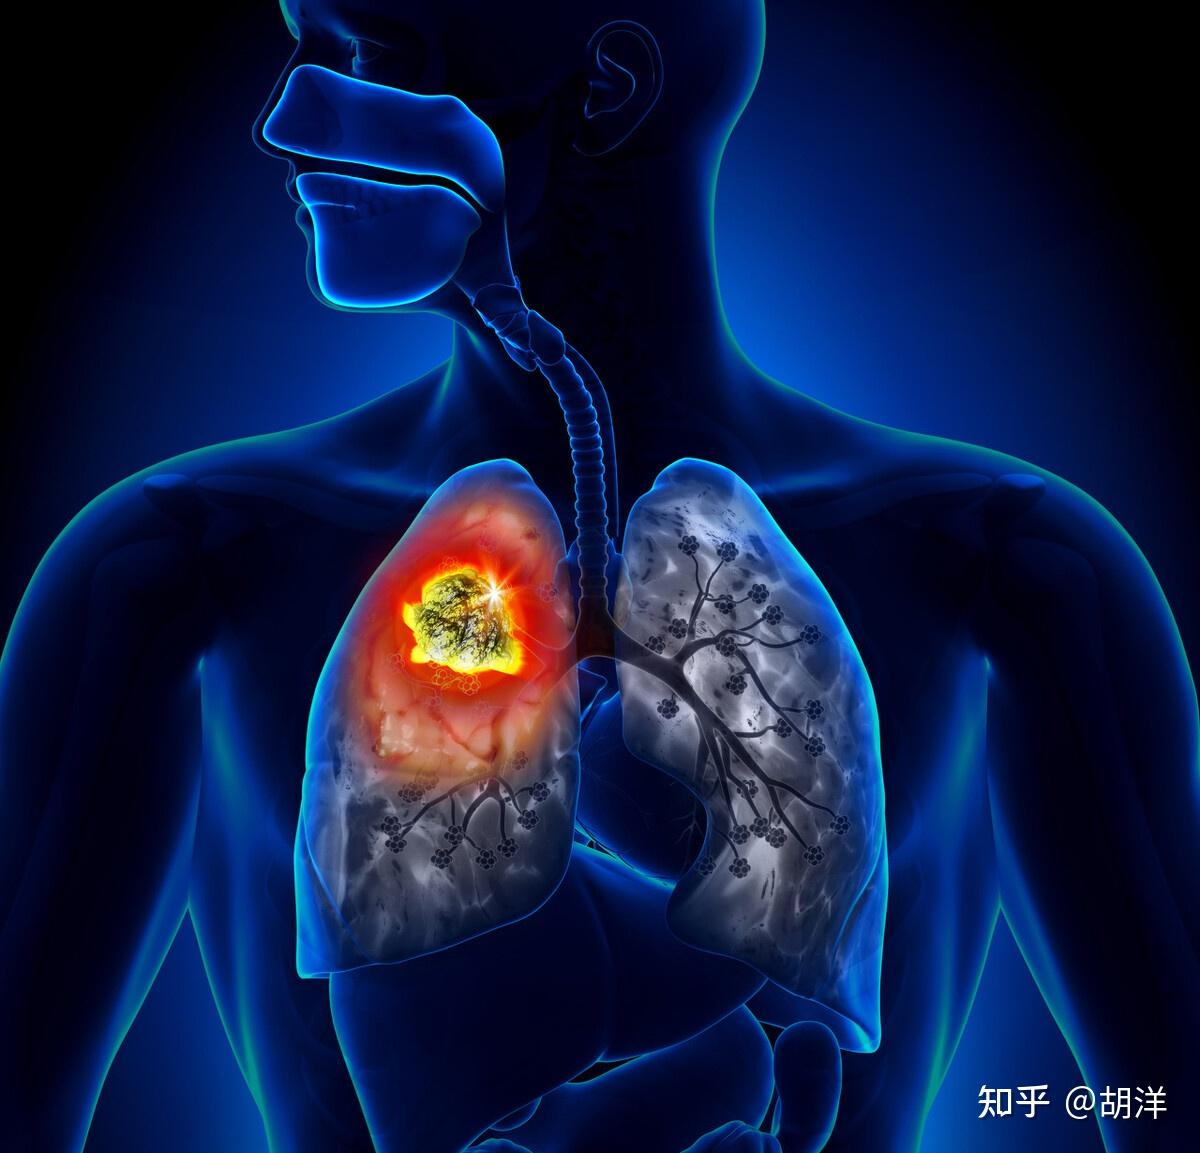 左肺腺癌并多发转移一例 - 病例中心(诊疗助手) - 爱爱医医学网